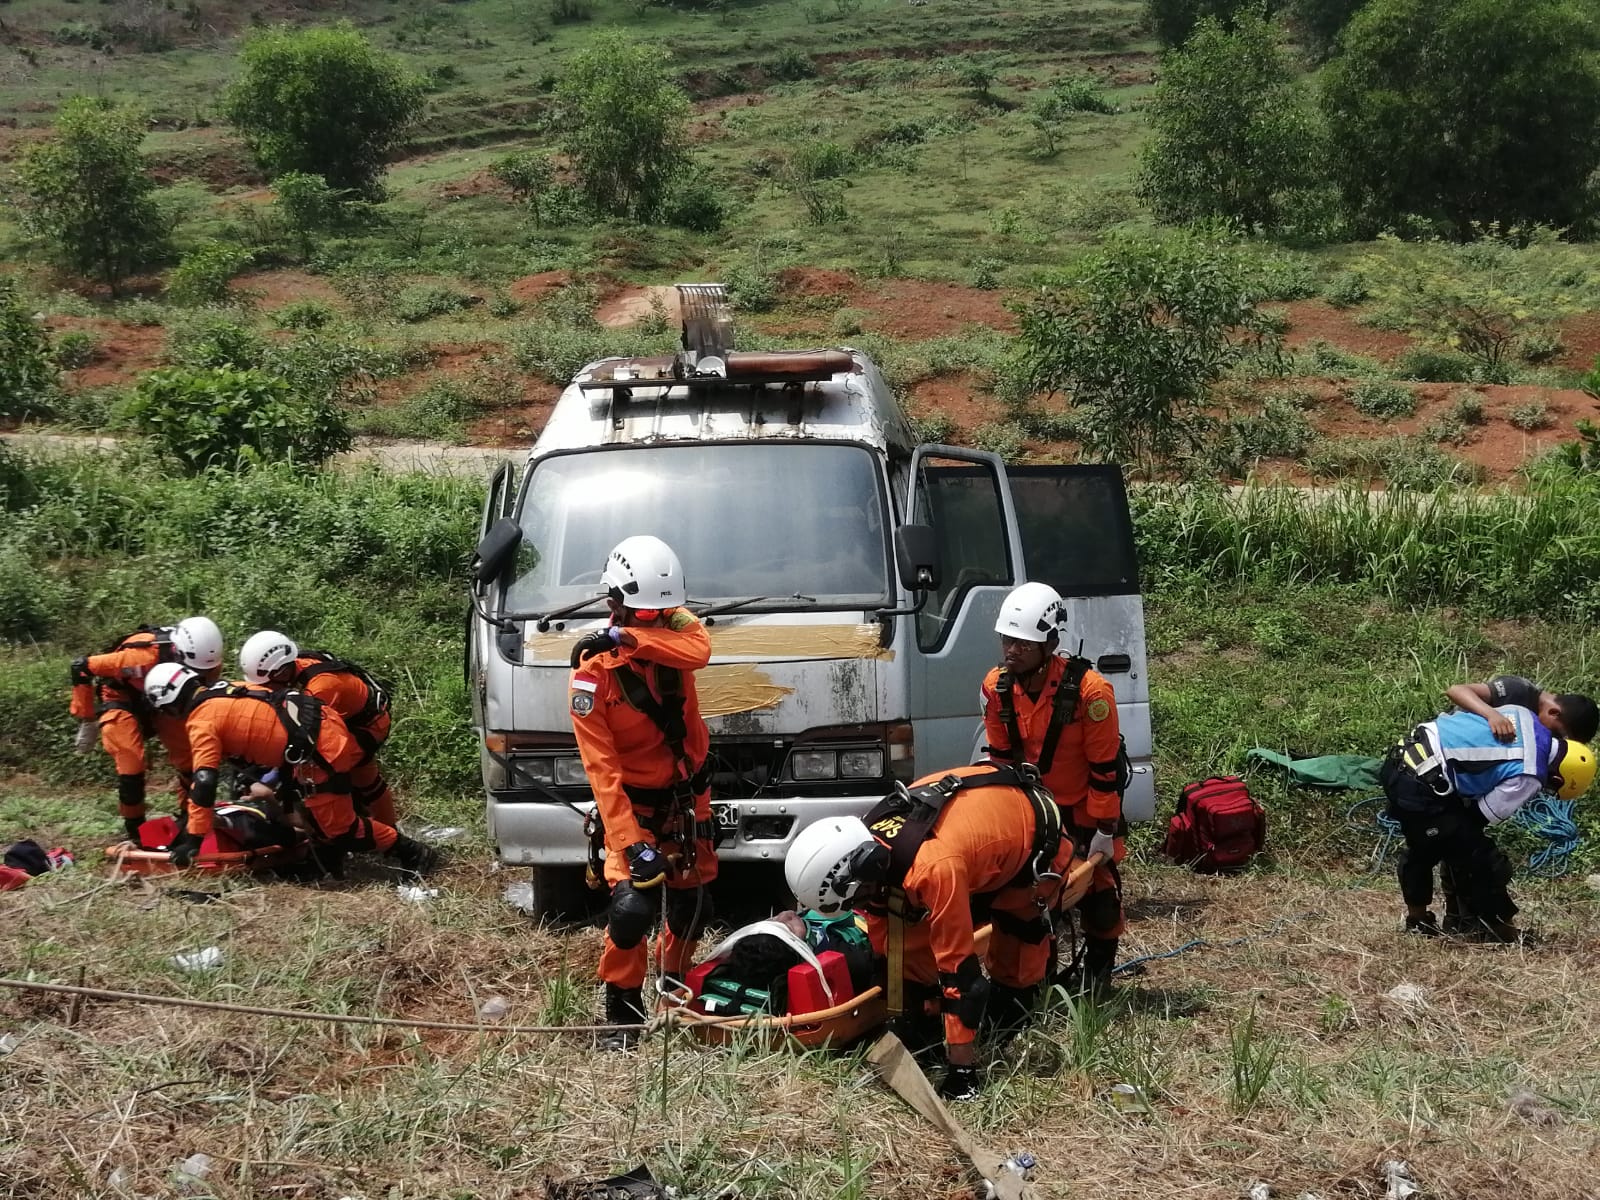 Anggota Basarnas Kantor SAR Bandung saat melakukan simulasi Vehicle Accident Rescue (VAR) di area kilometer 76, Cipularang, Purwakarta.